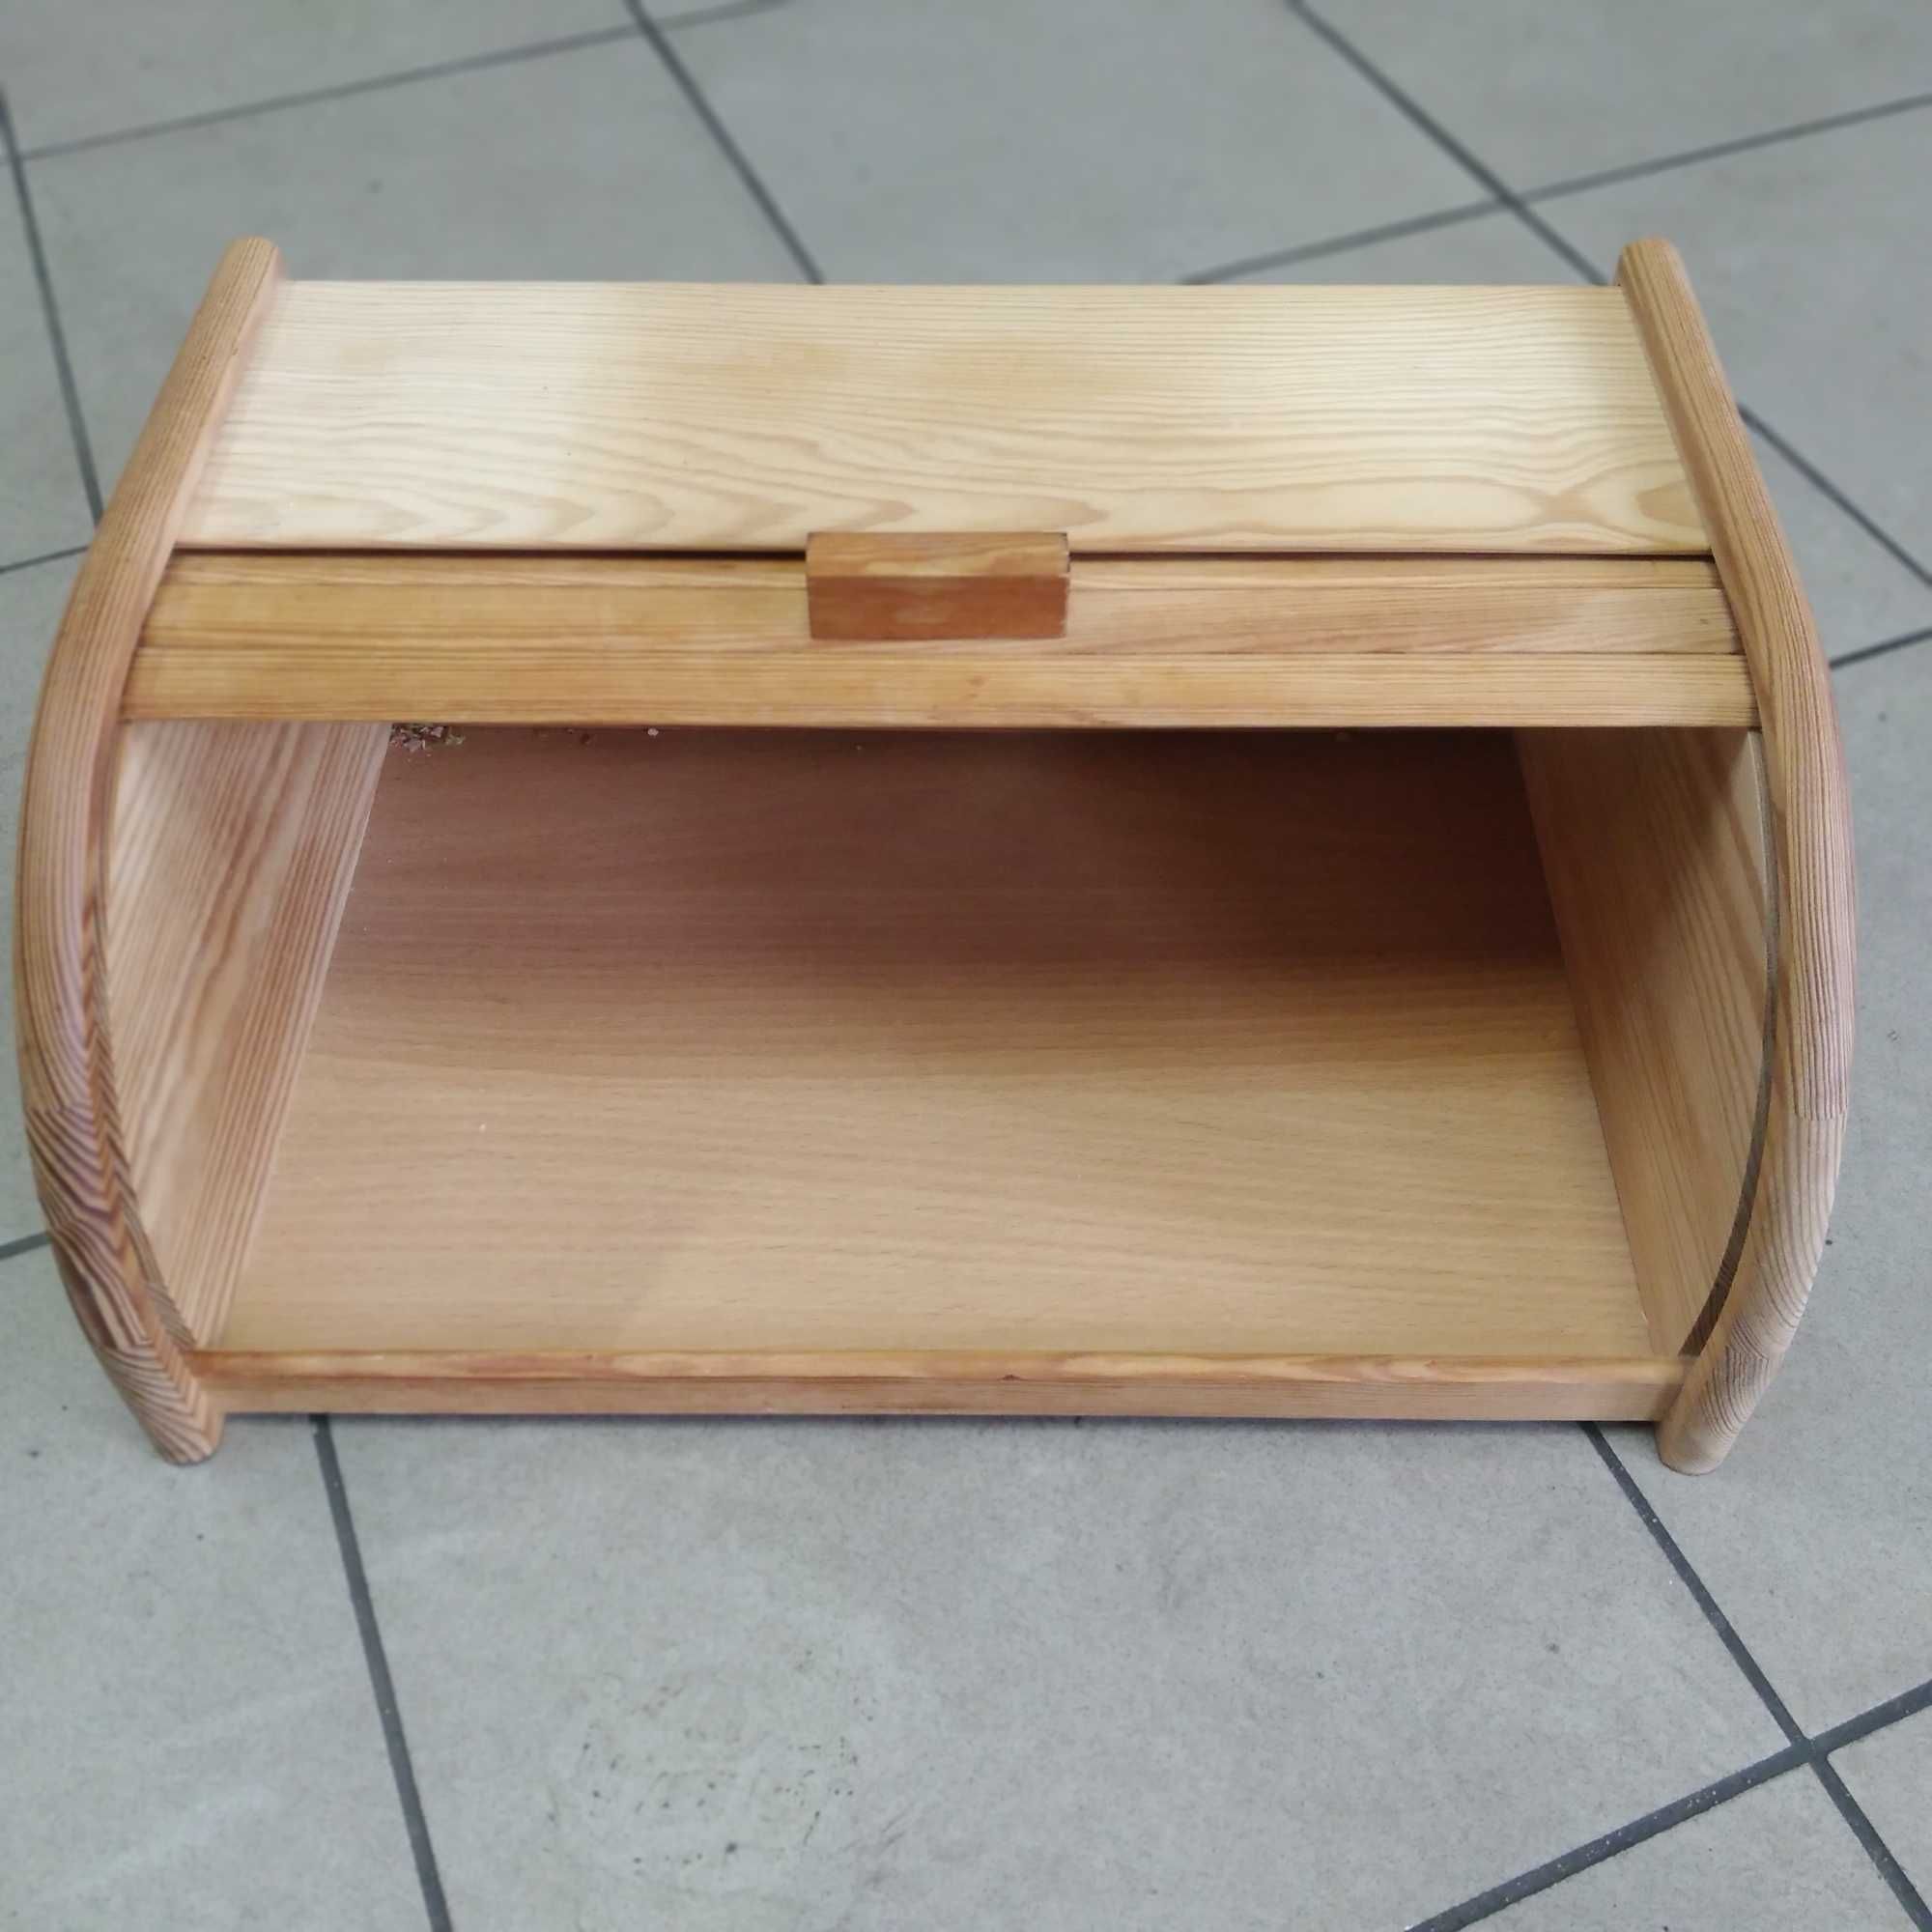 NOWY - Drewniany Pojemnik na chleb 40 x 27 cm/
Zachęcam do zakupu